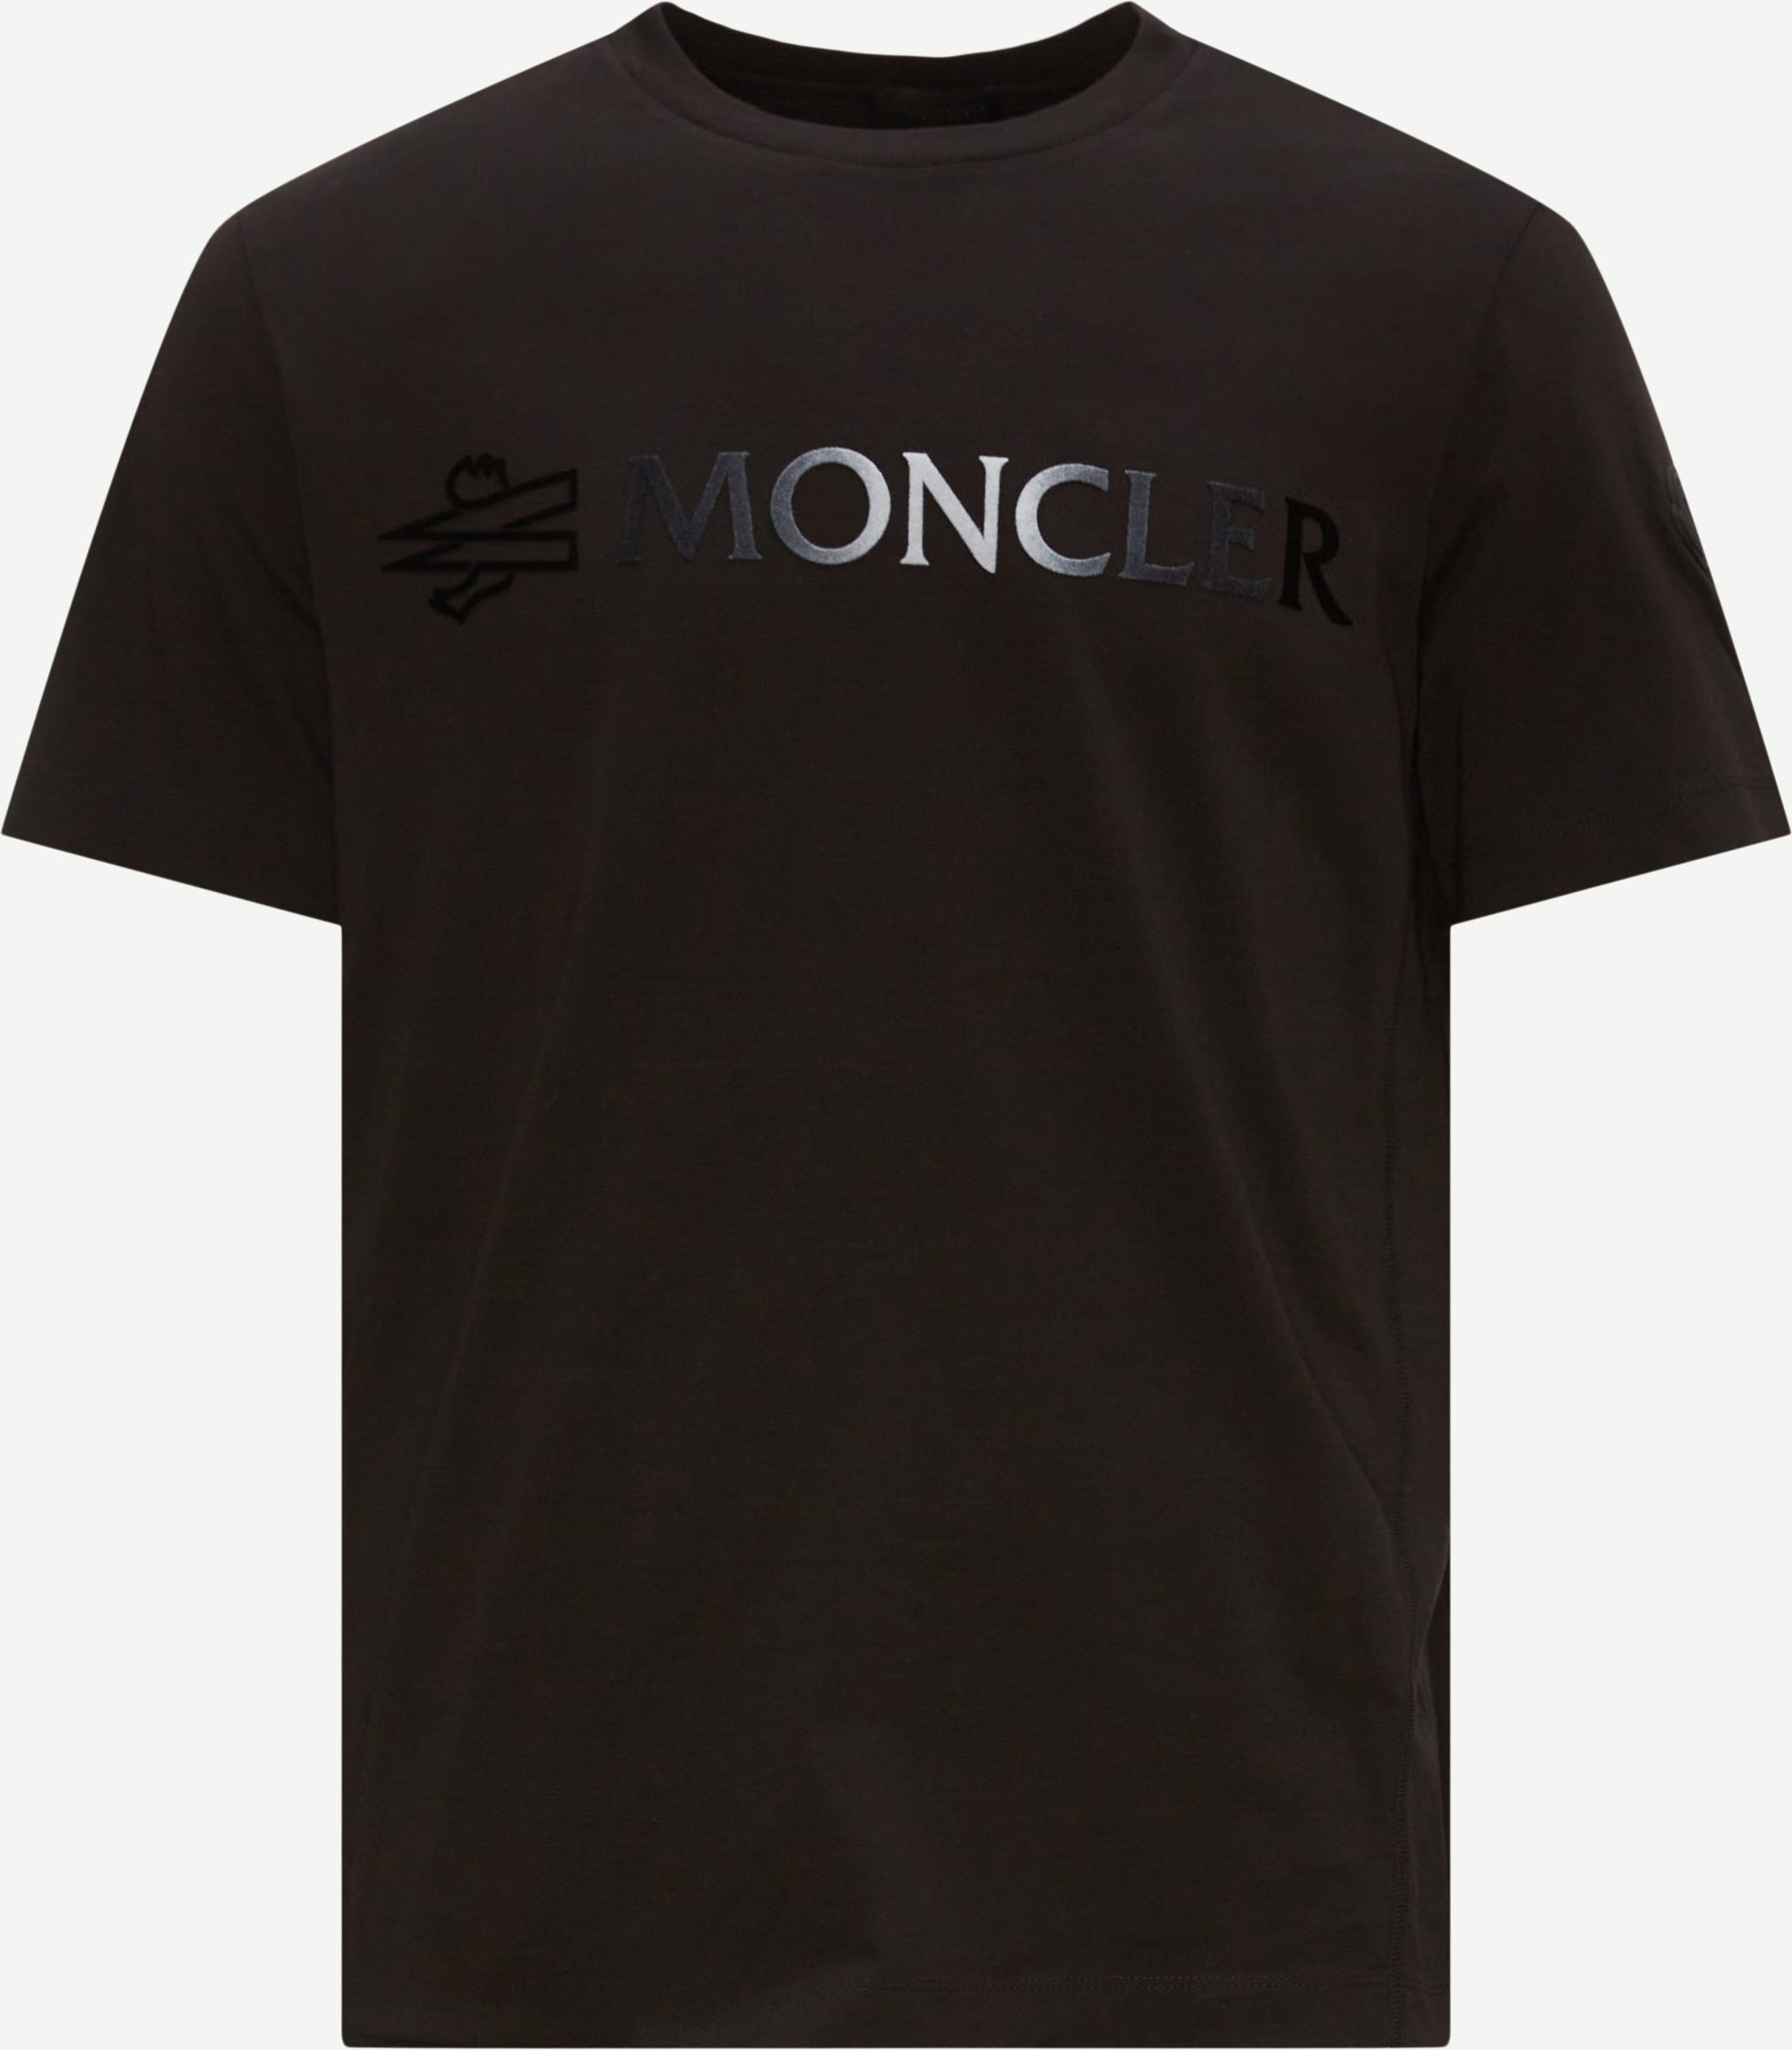 Moncler T-shirts 8C00016 89A17 Sort